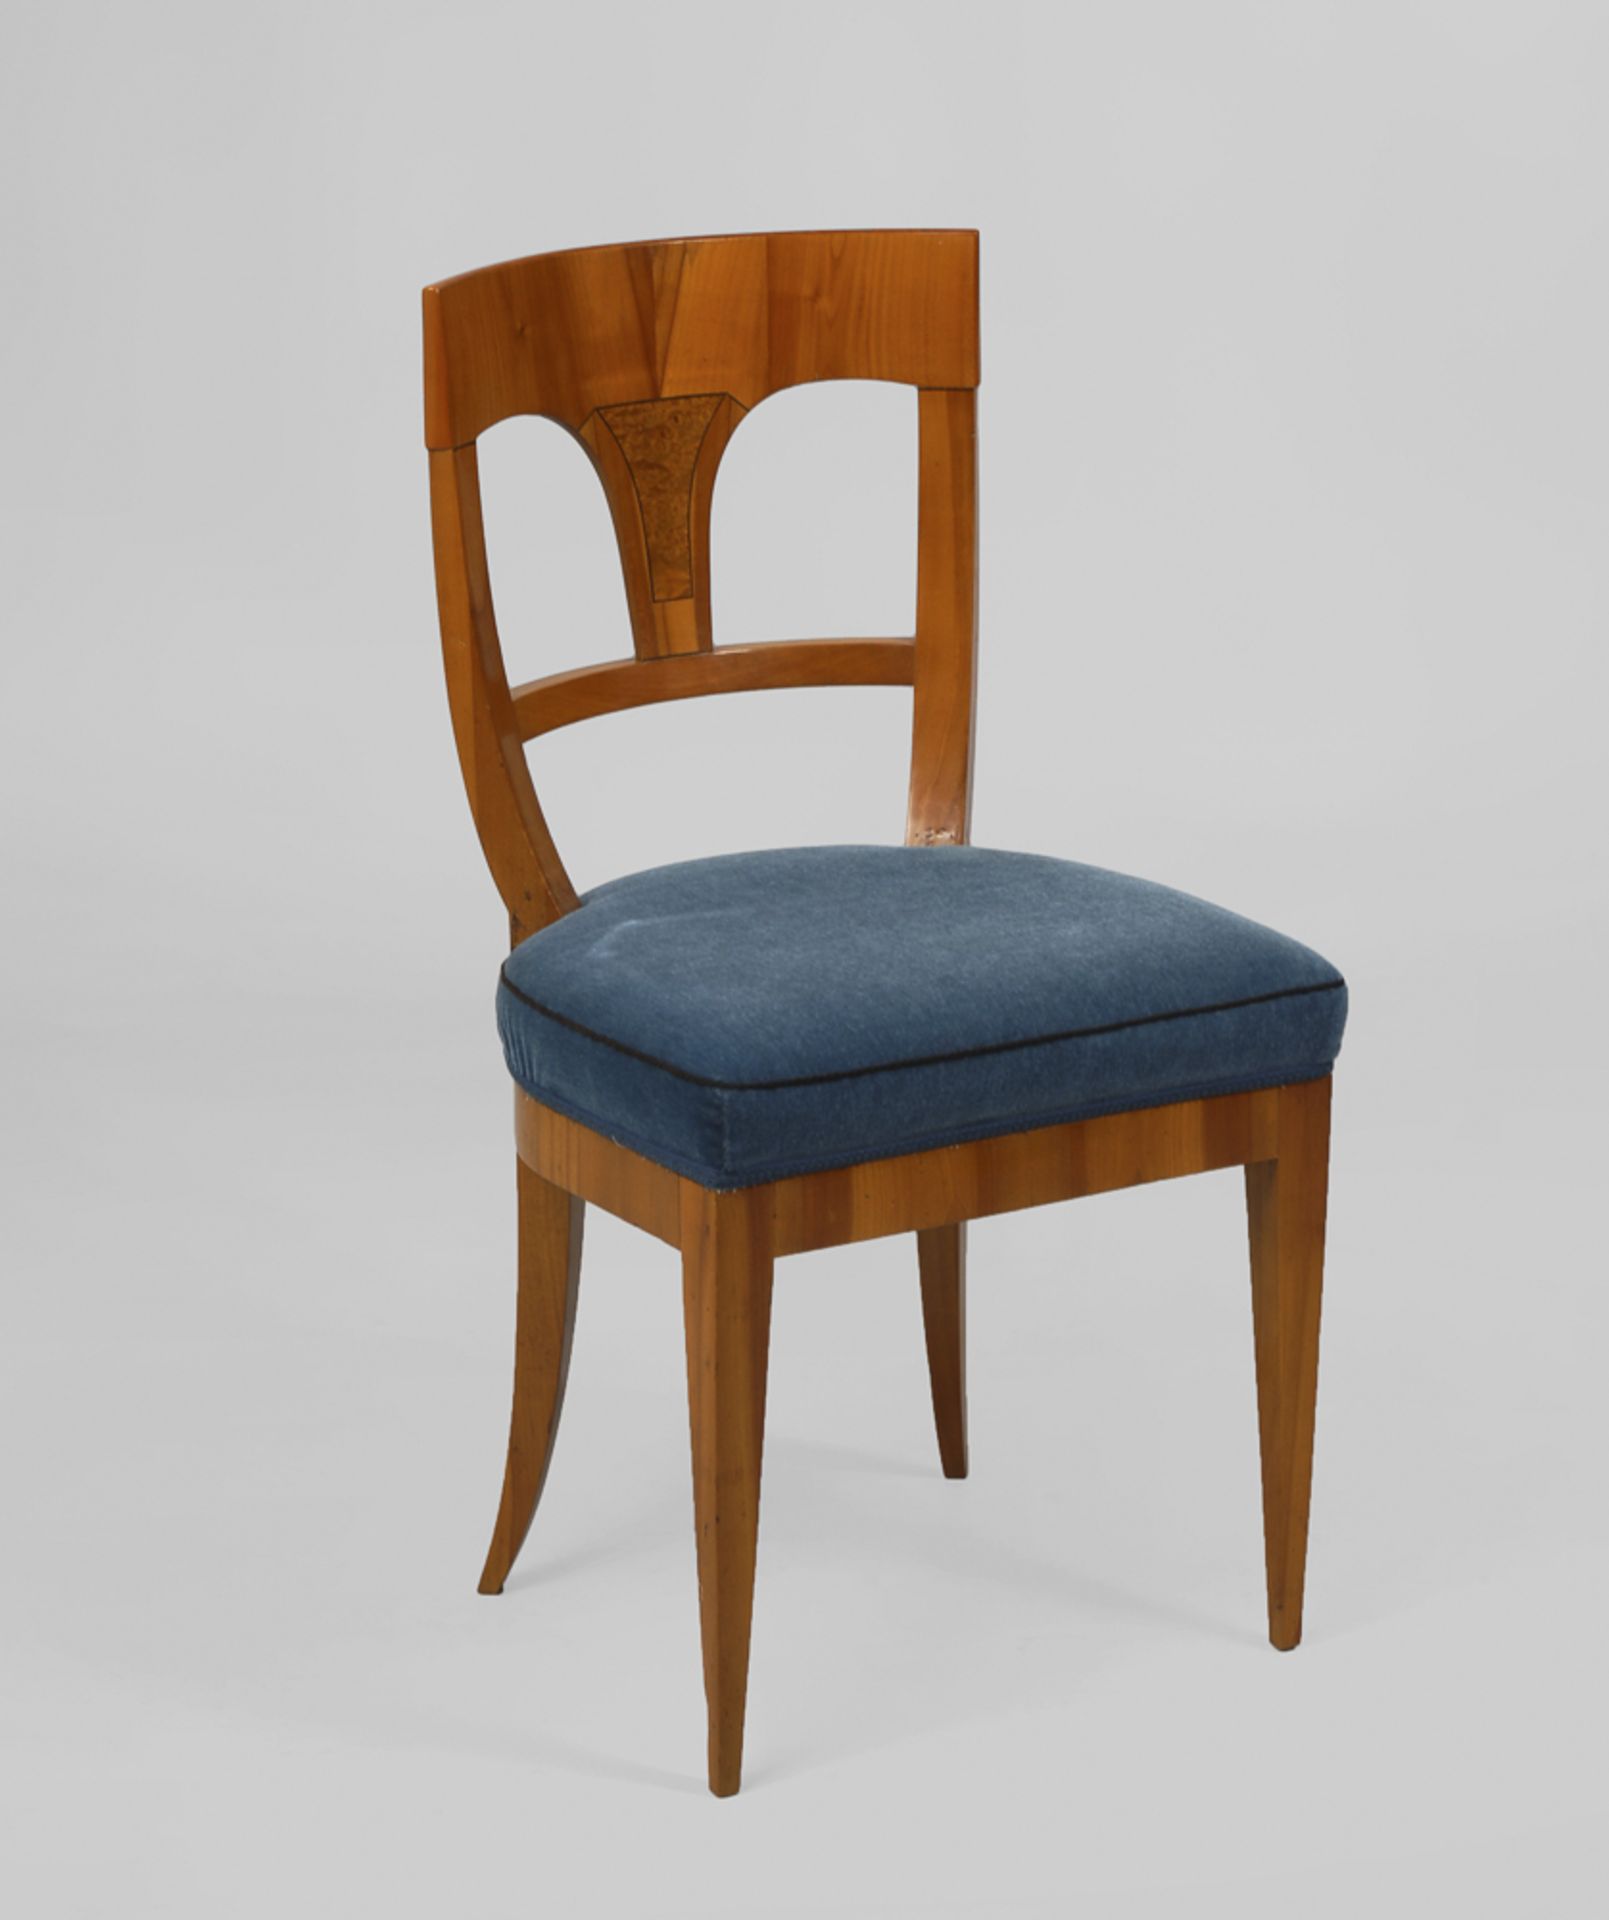 Biedermeier-Stuhl.Um 1820/30. Kirschbaum furniert. H 112 cm. Posterstuhl mit konvex geformtem - Bild 2 aus 2